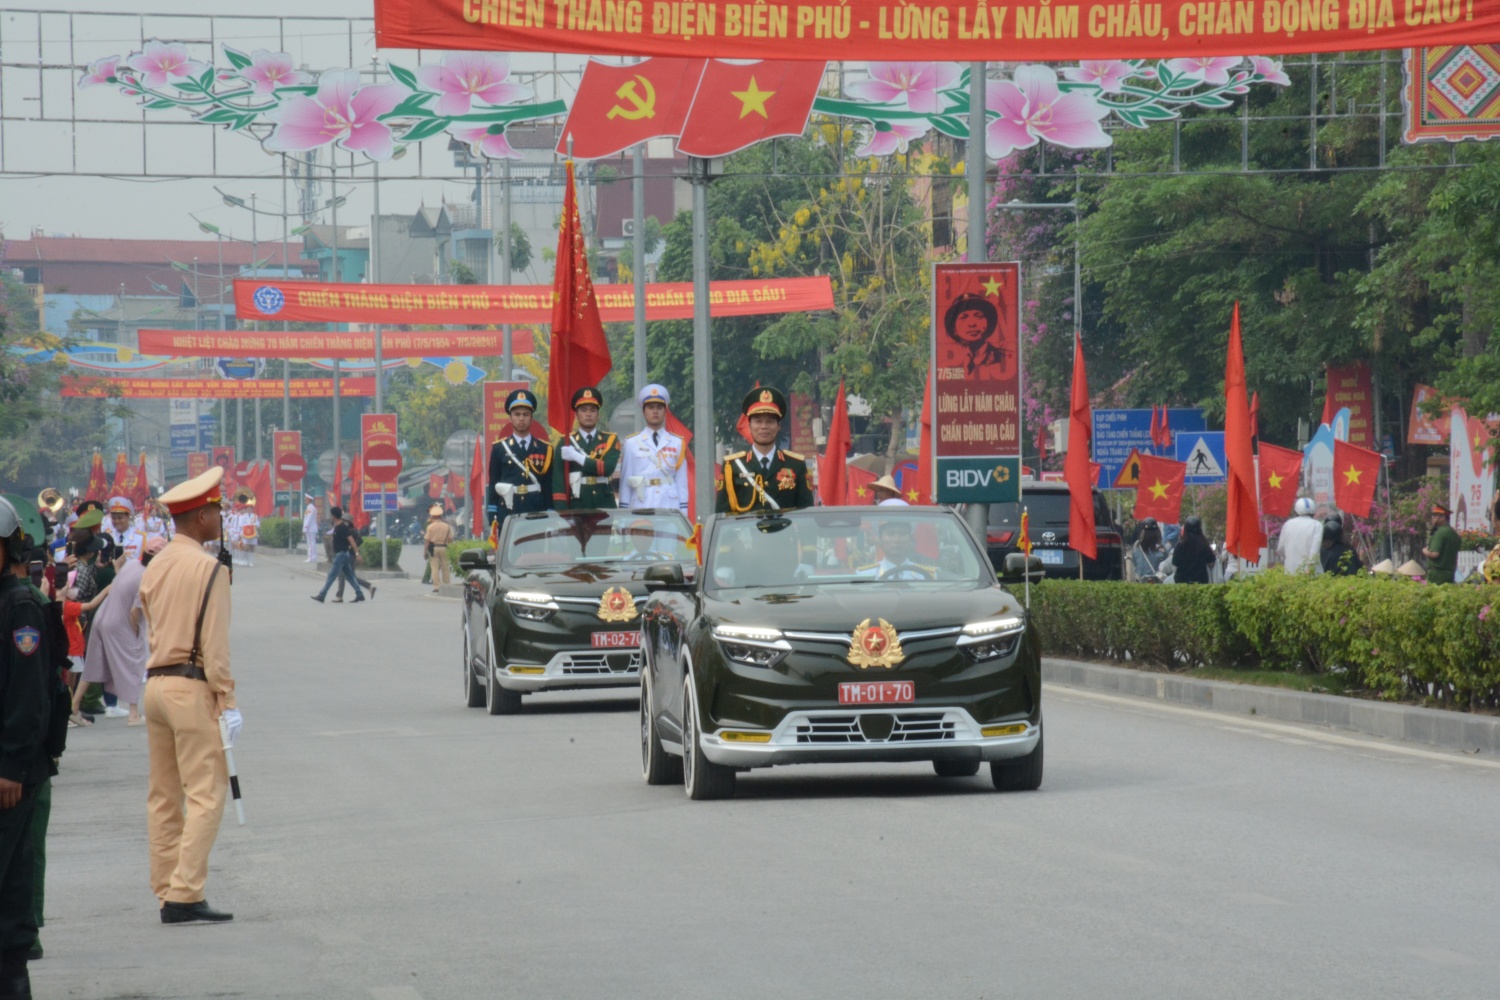 Thành phố Điện Biên Phủ rực rỡ cờ hoa, sẵn sàng cho lễ kỷ niệm chiến thắng lịch sử